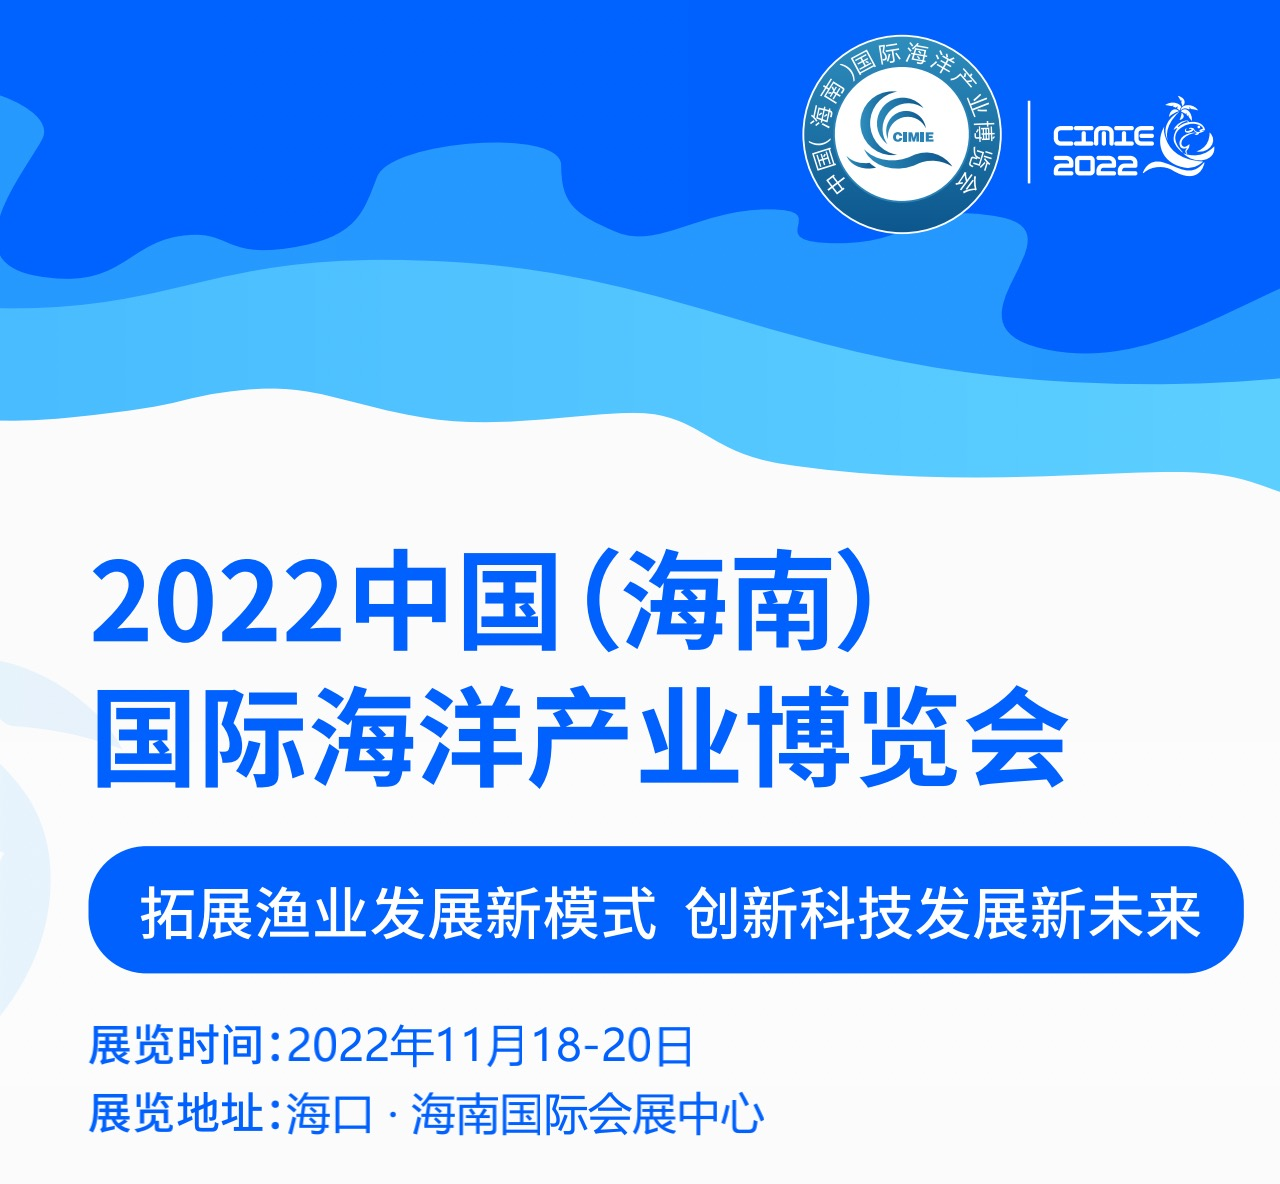 2022 Ĉinio (Hainan) Internacia Mara Industria Ekspozicio